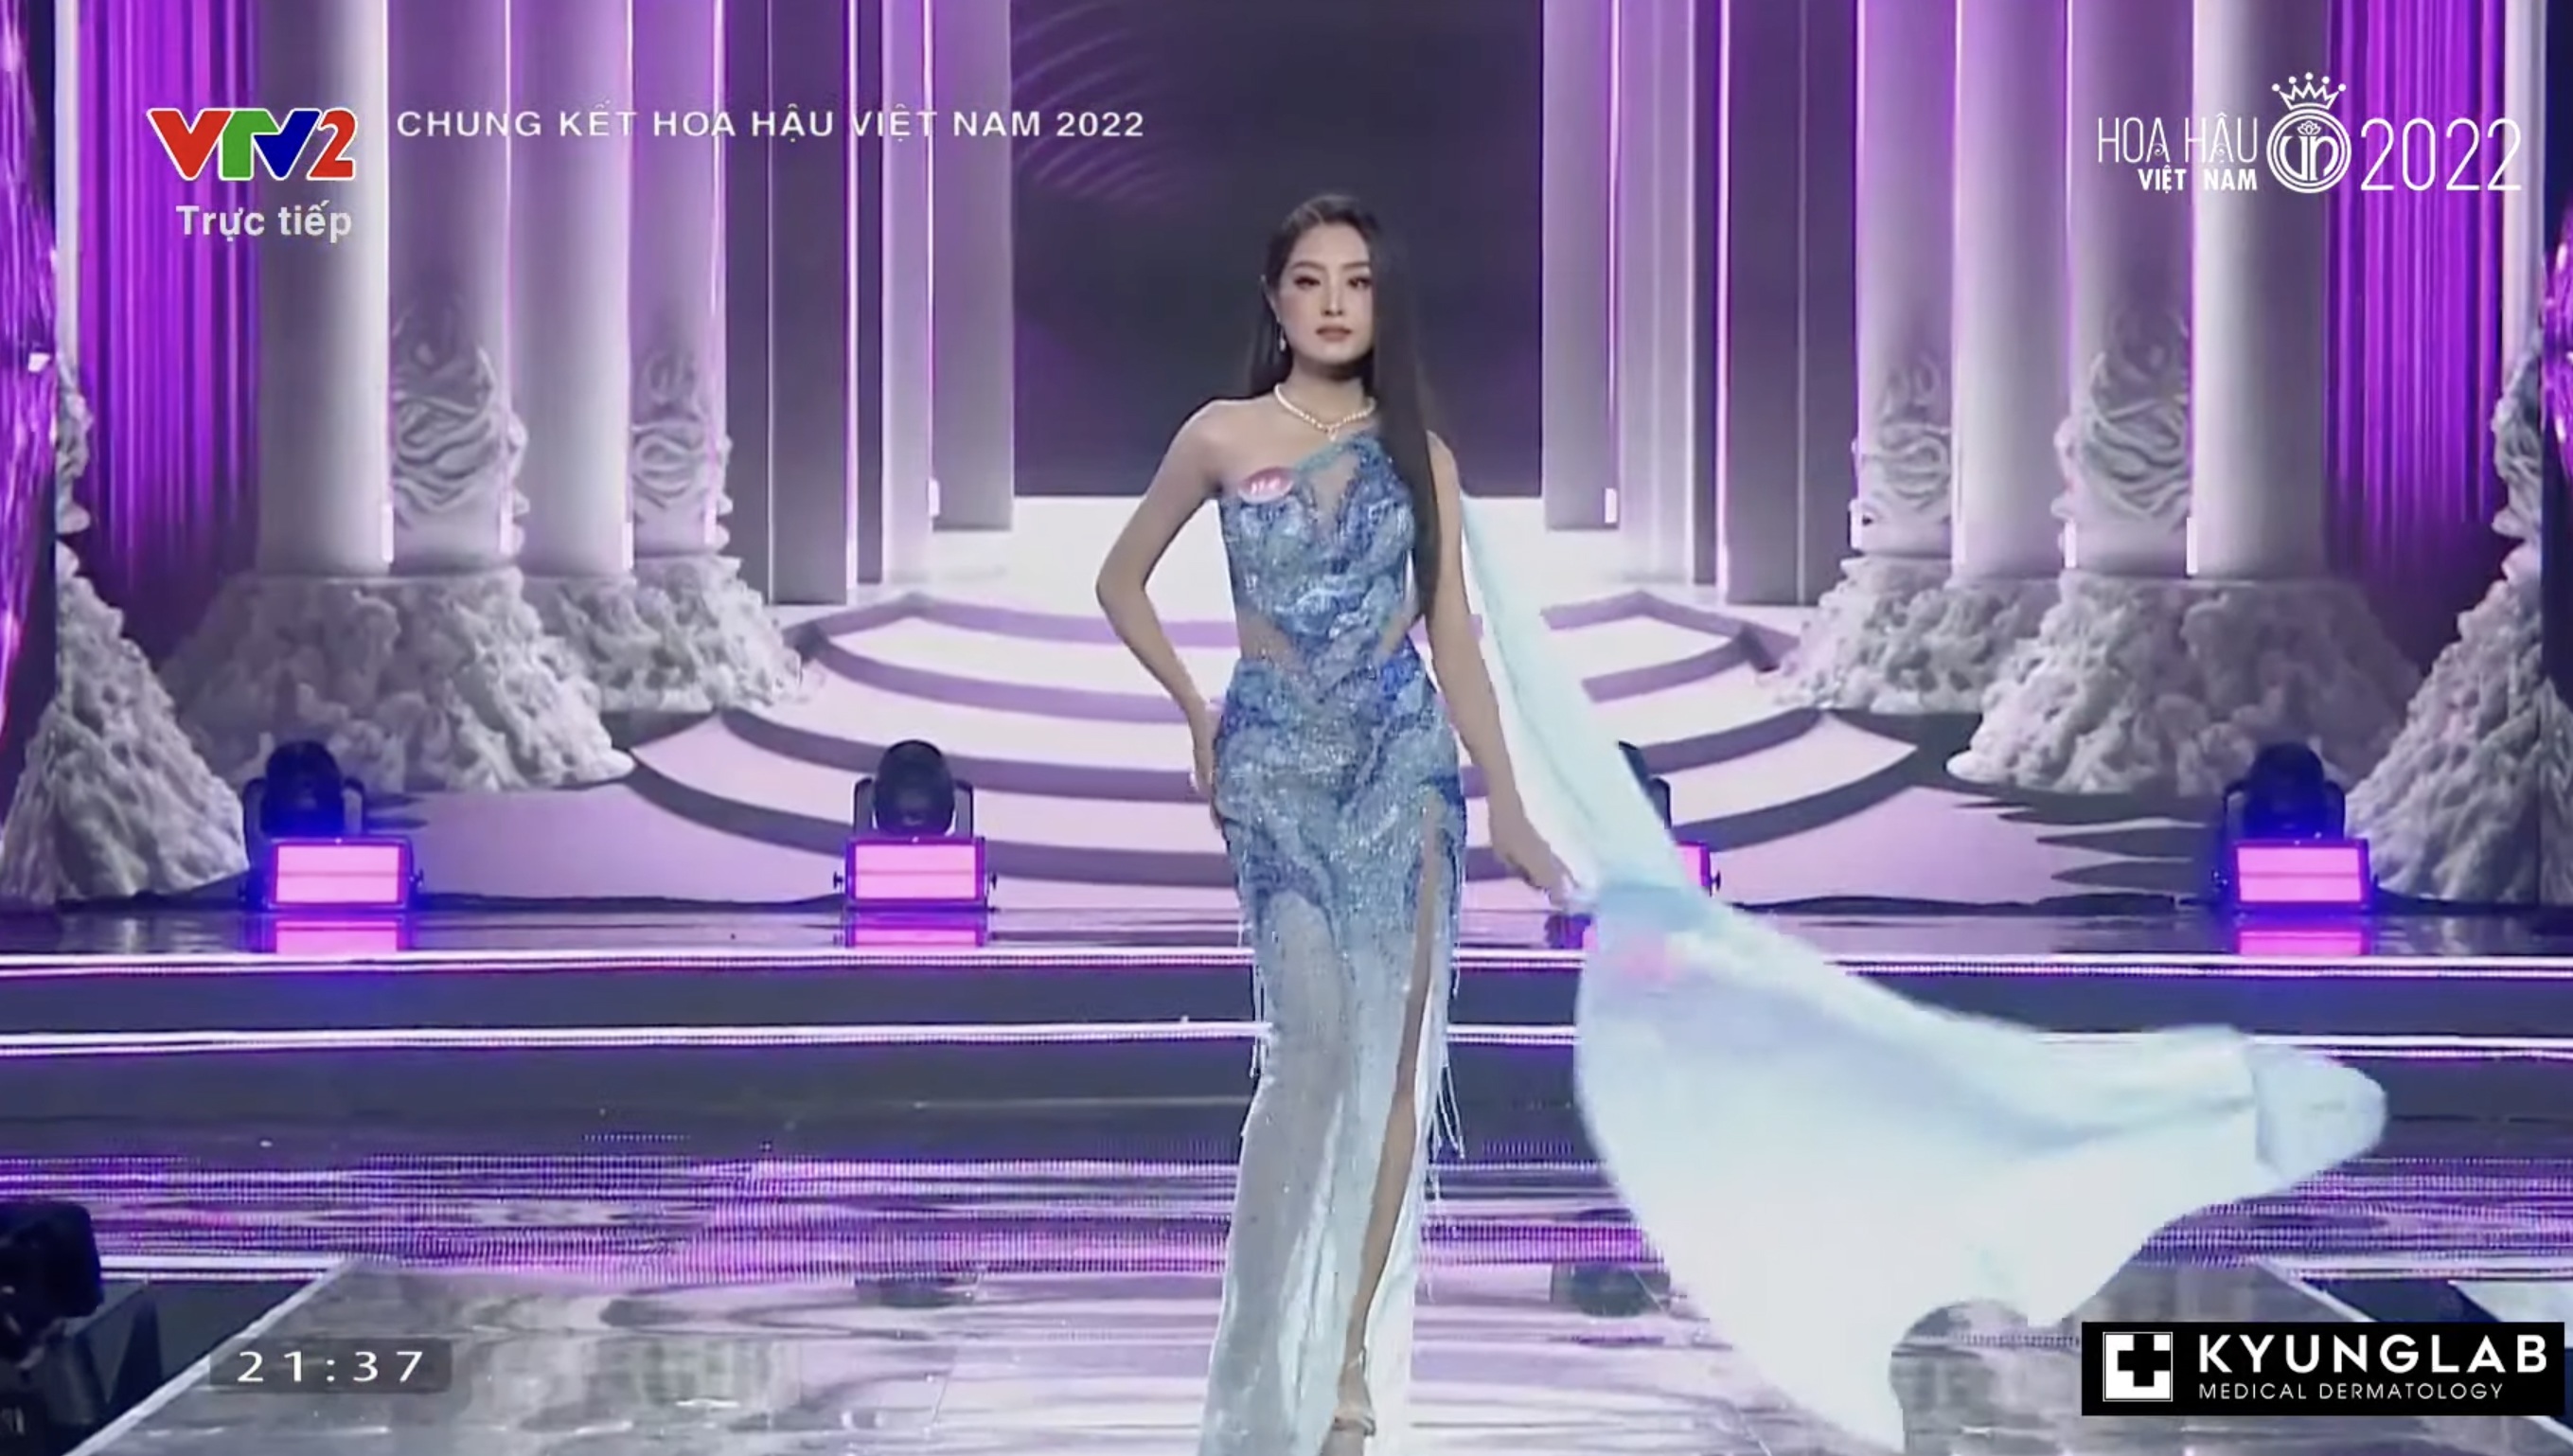 Chung kết Hoa hậu Việt Nam 2022: Tân Hoa hậu chính thức gọi tên Huỳnh Thị Thanh Thuỷ - 30